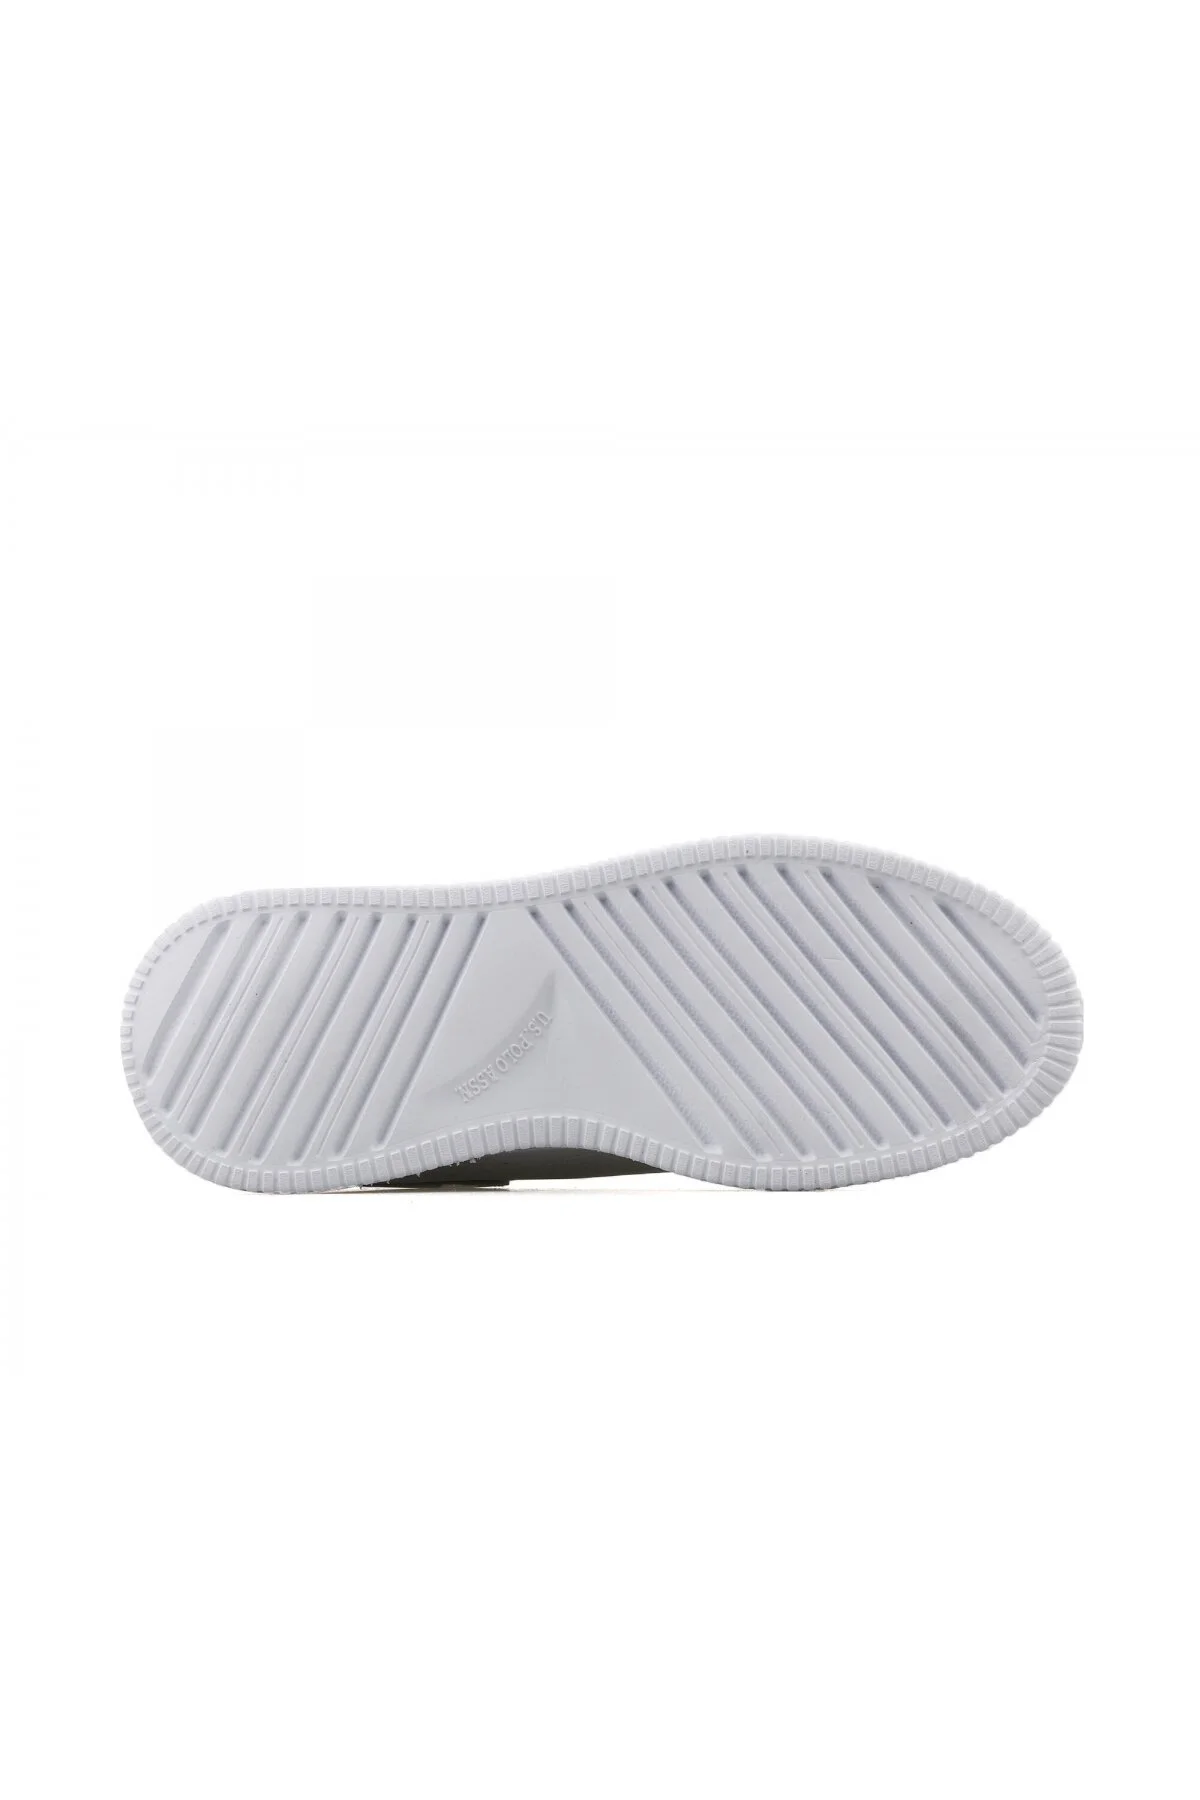 ABE 3FX Kadın Sneaker Spor Ayakkabı-Beyaz - Thumbnail